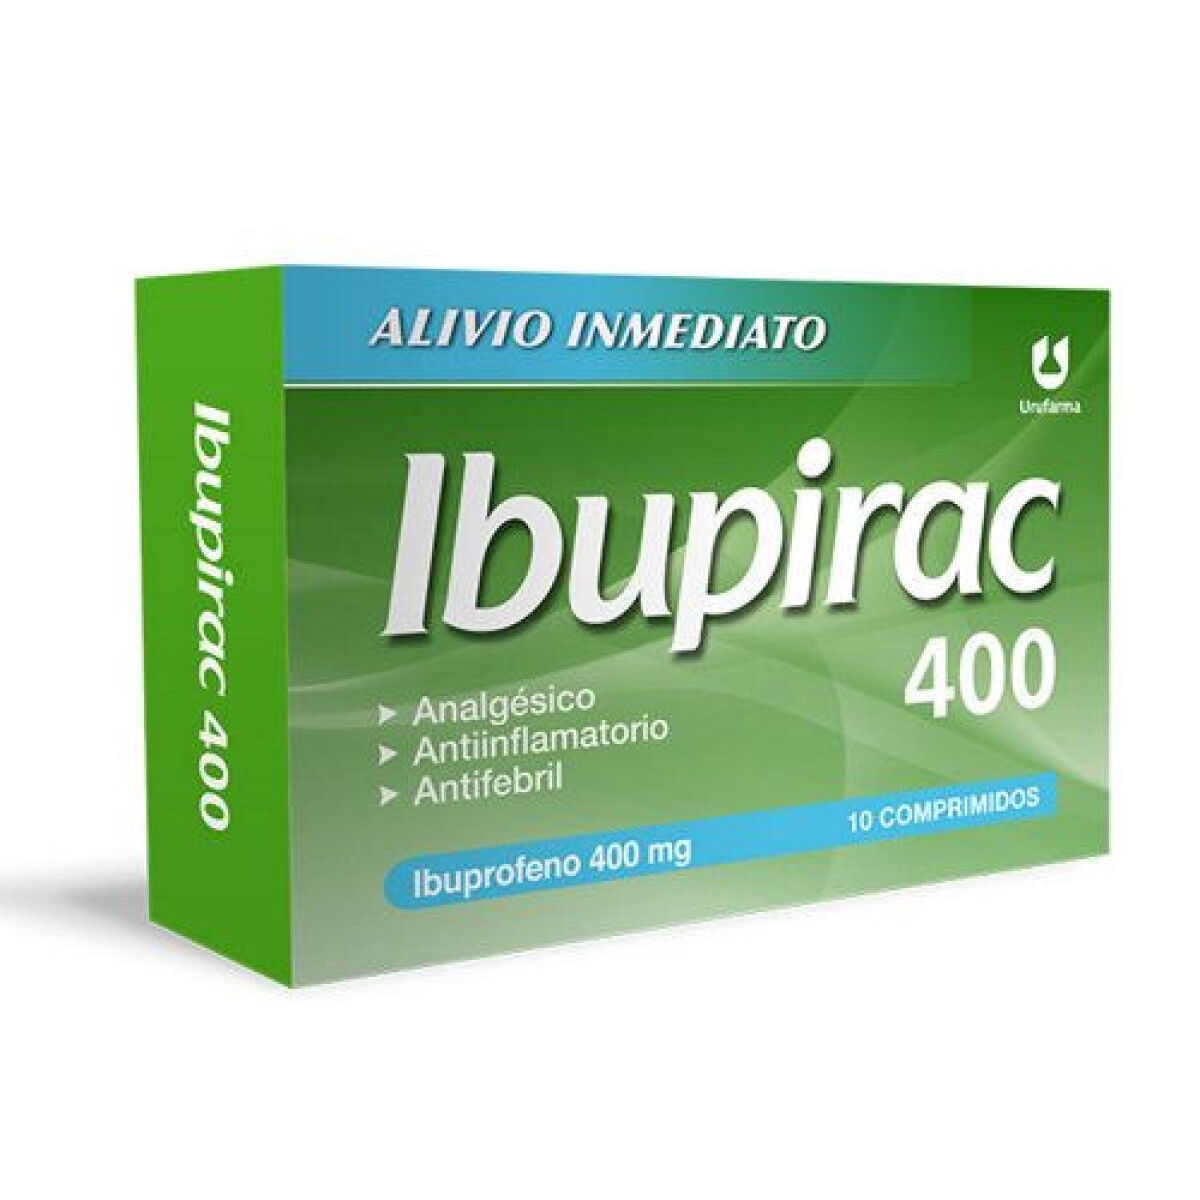 Ibupirac 400 mg 10 comprimidos. 